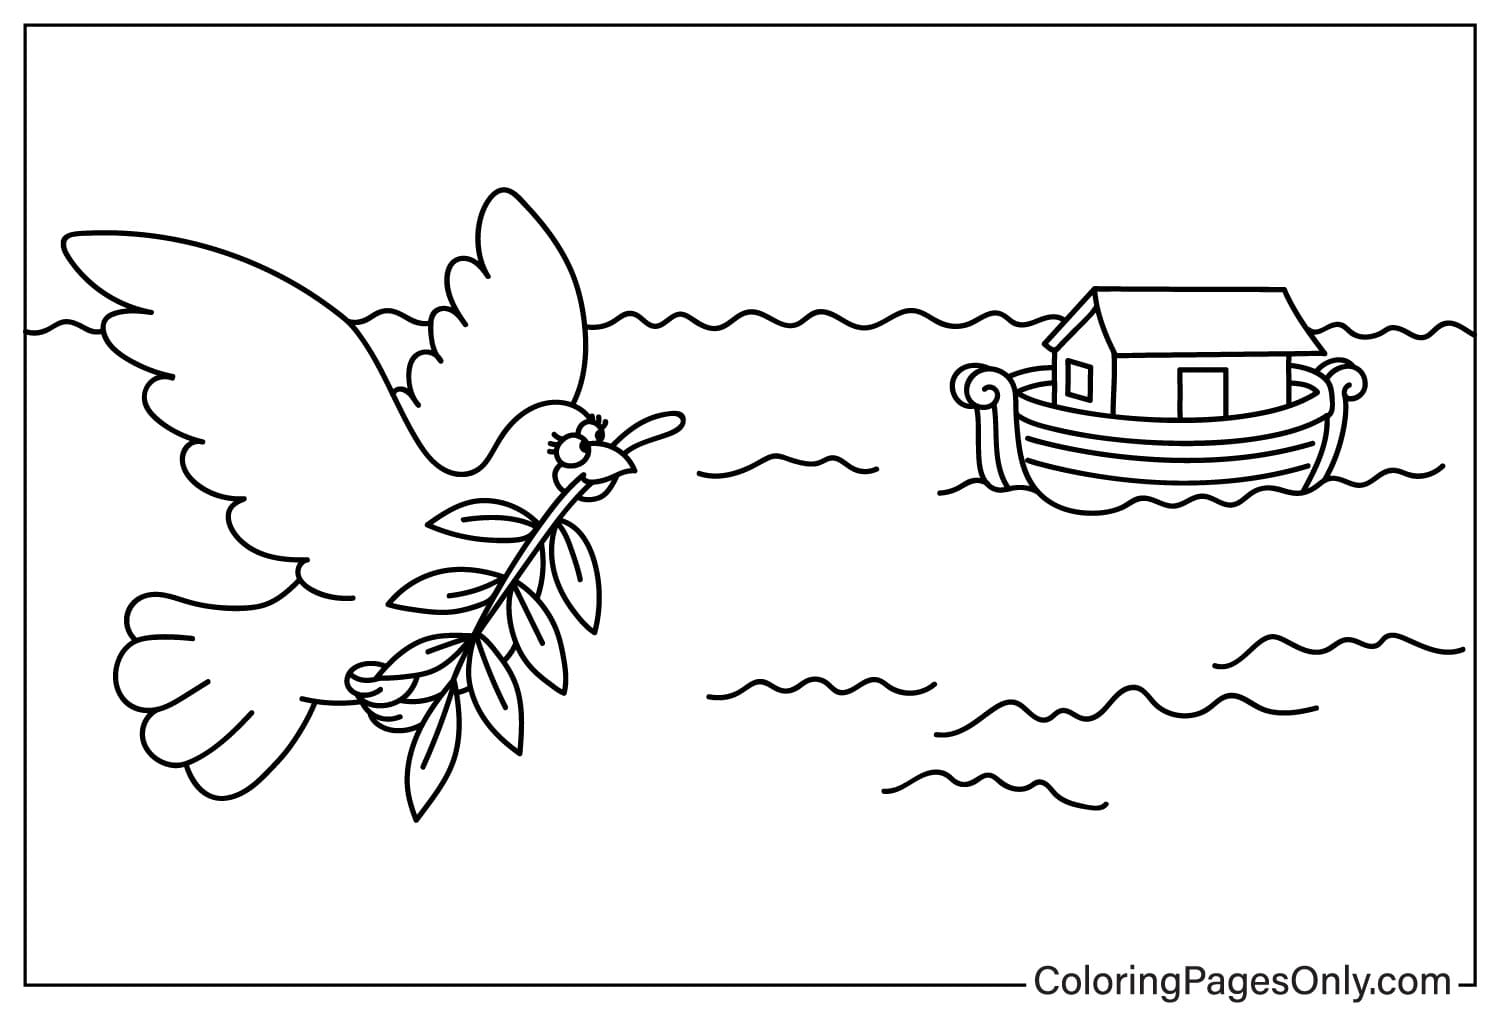 Ноев голубь возвращается с раскраской оливкового листа из Ноева ковчега